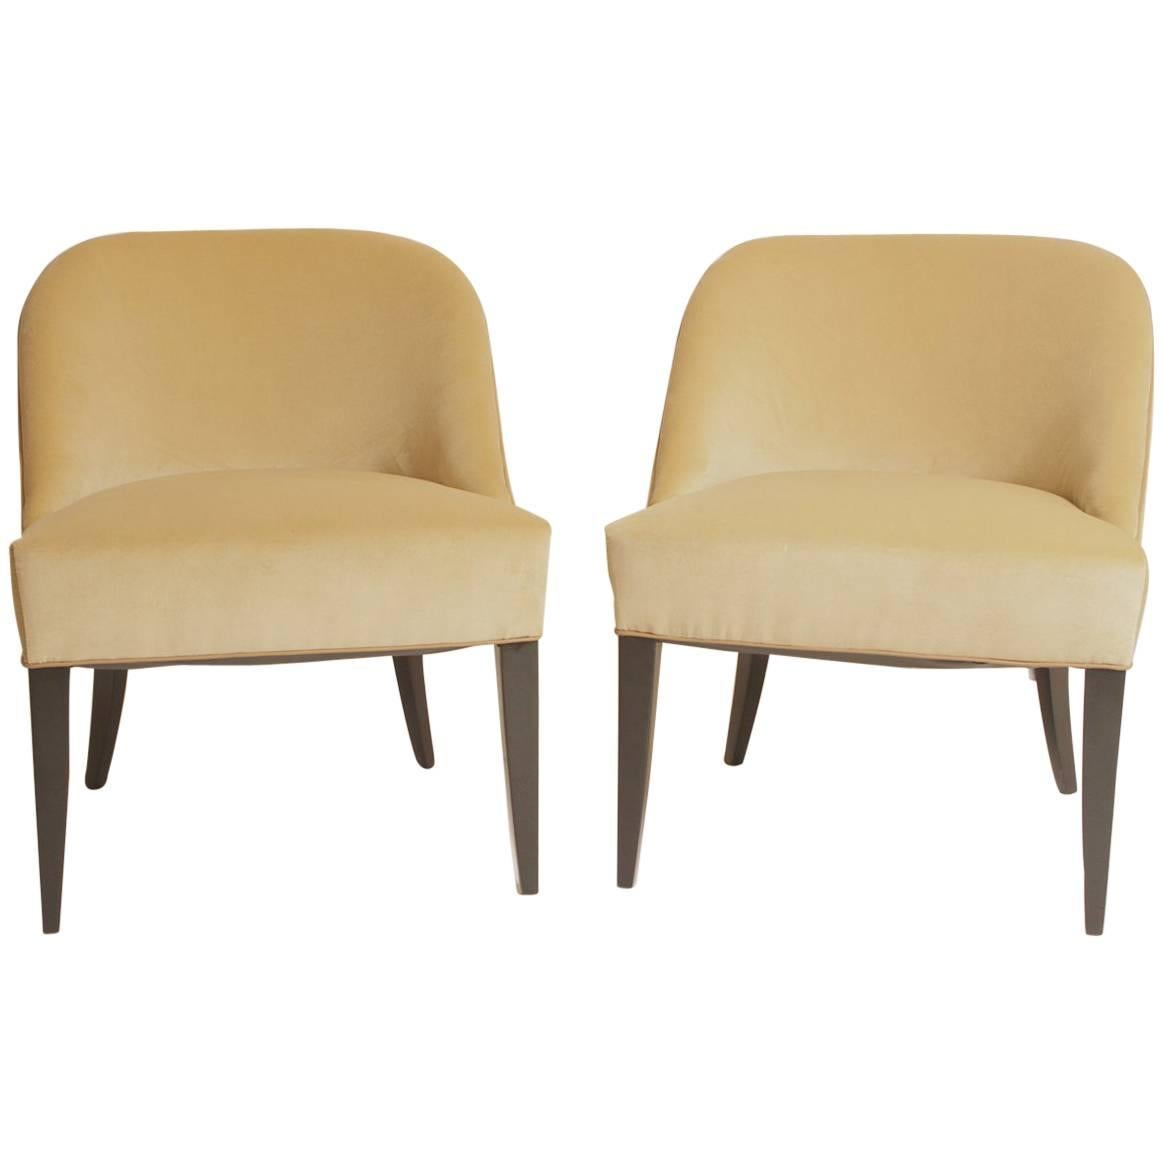 Pair of Jean Pascaud Modern Chairs, circa 1940